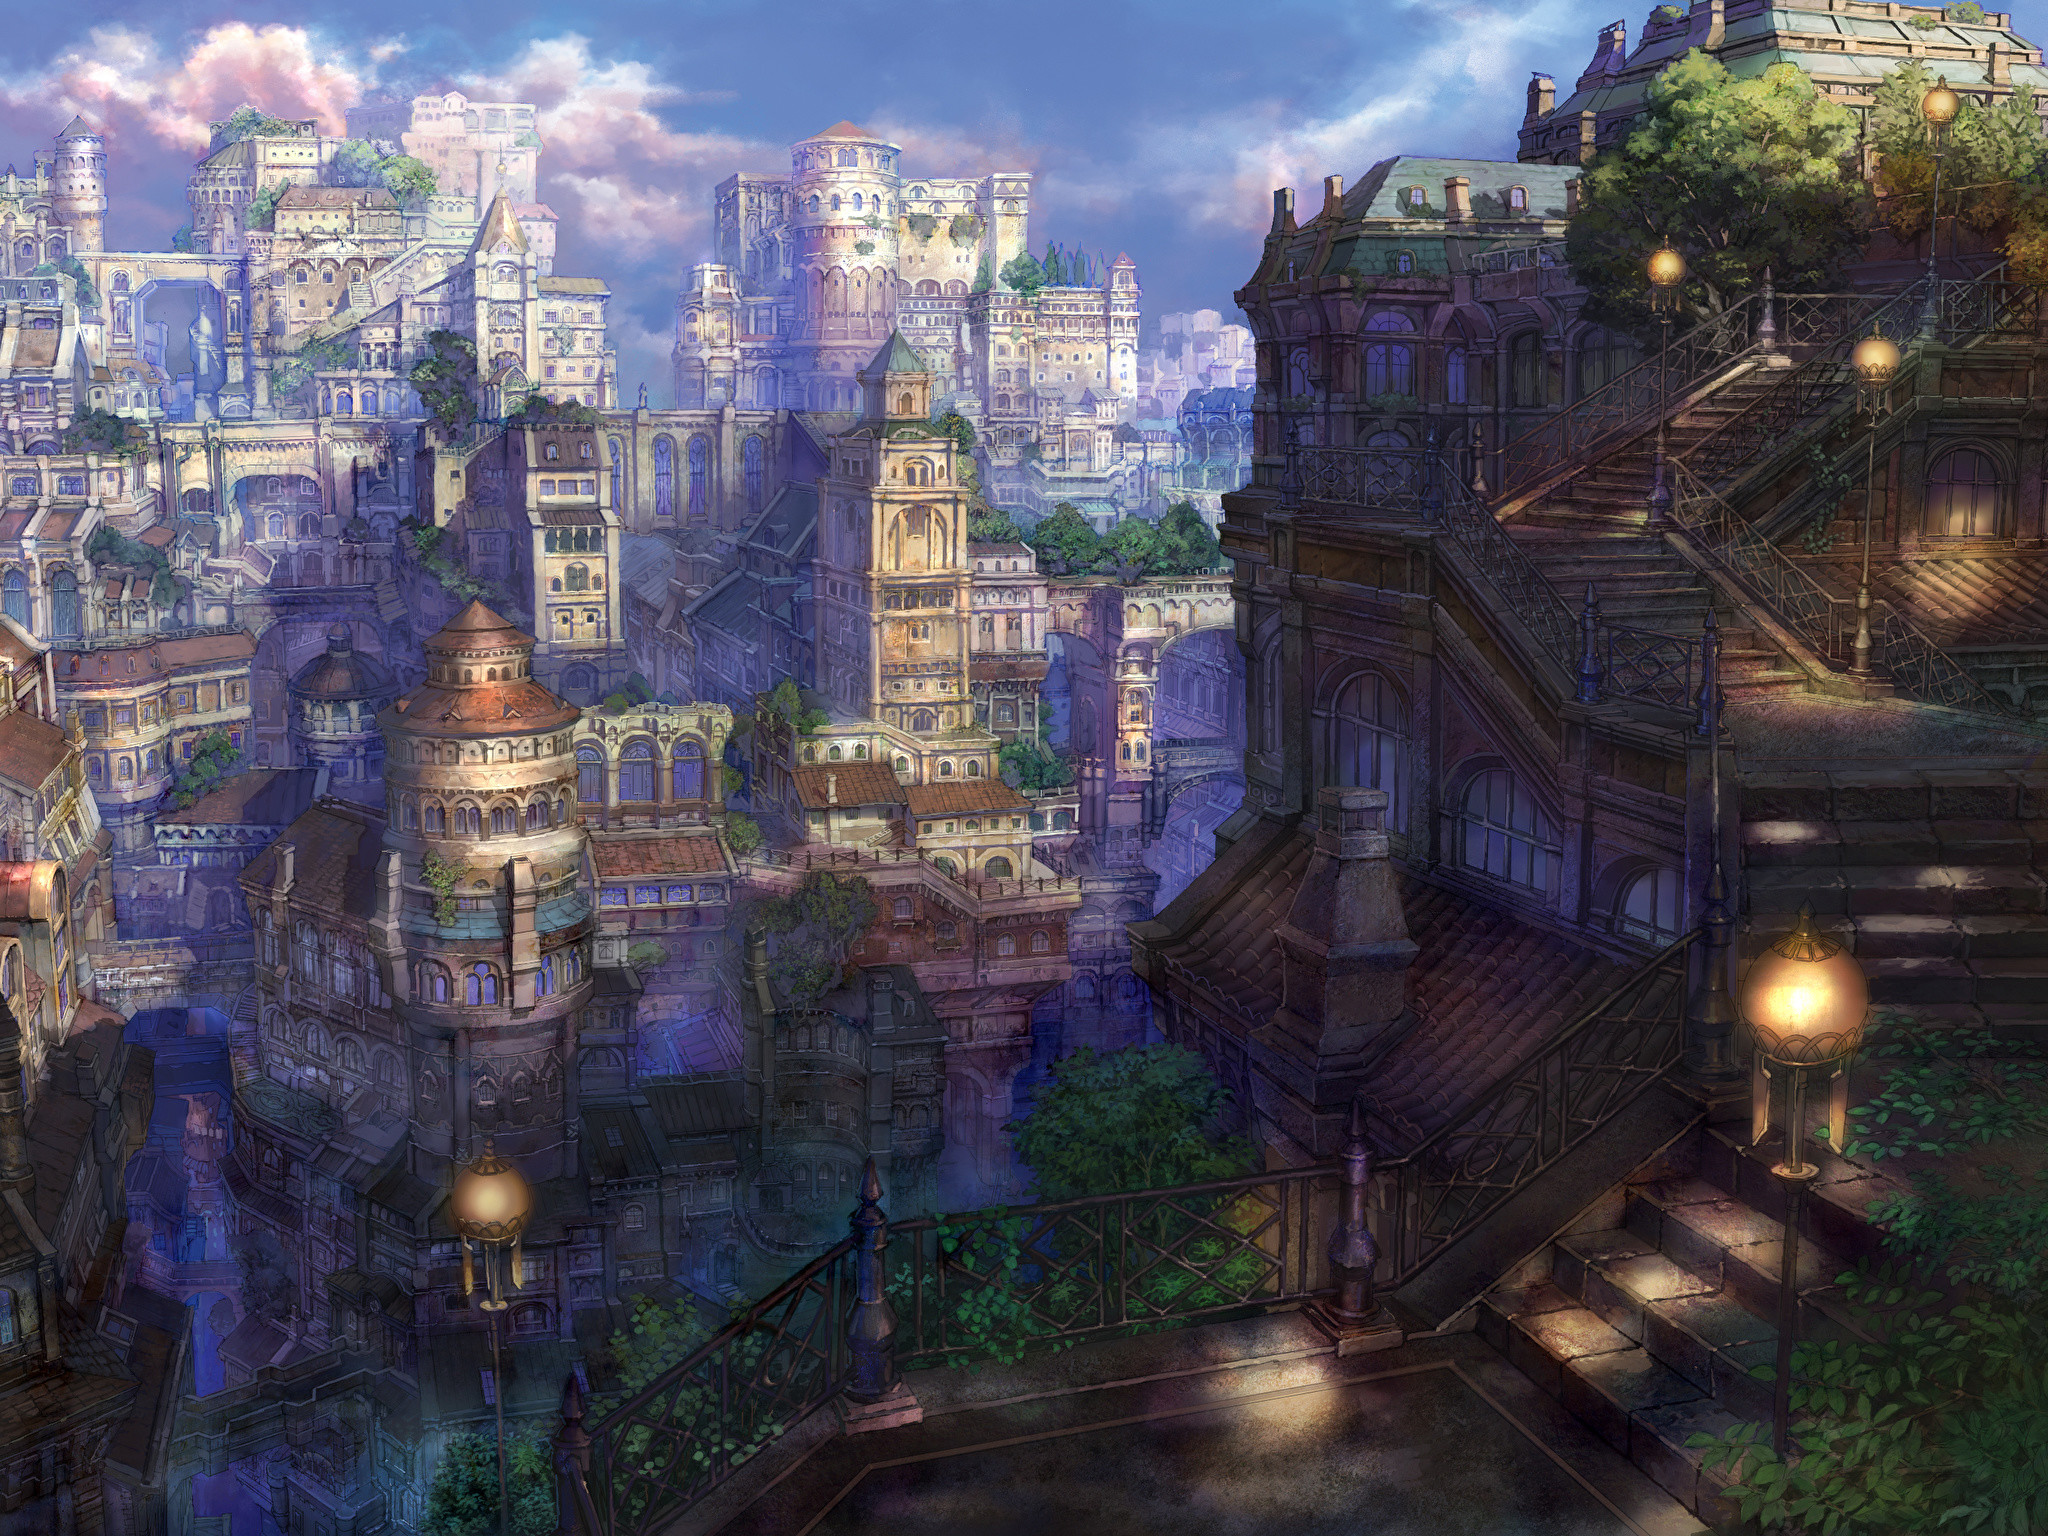 Hình vẽ anime về thành phố trong truyện tranh